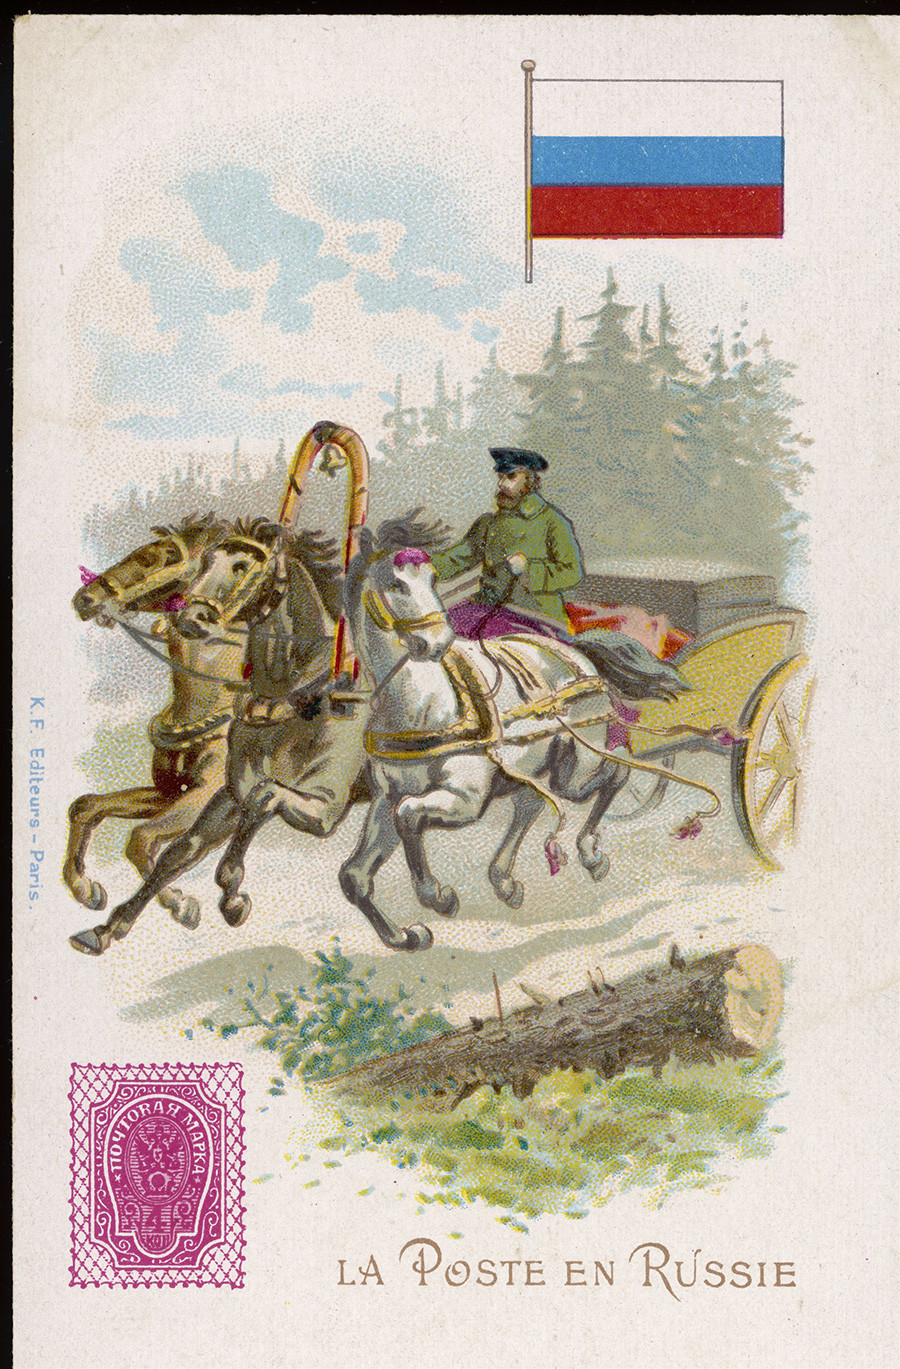 Razglednica s poštno trojko (približno 1900).
